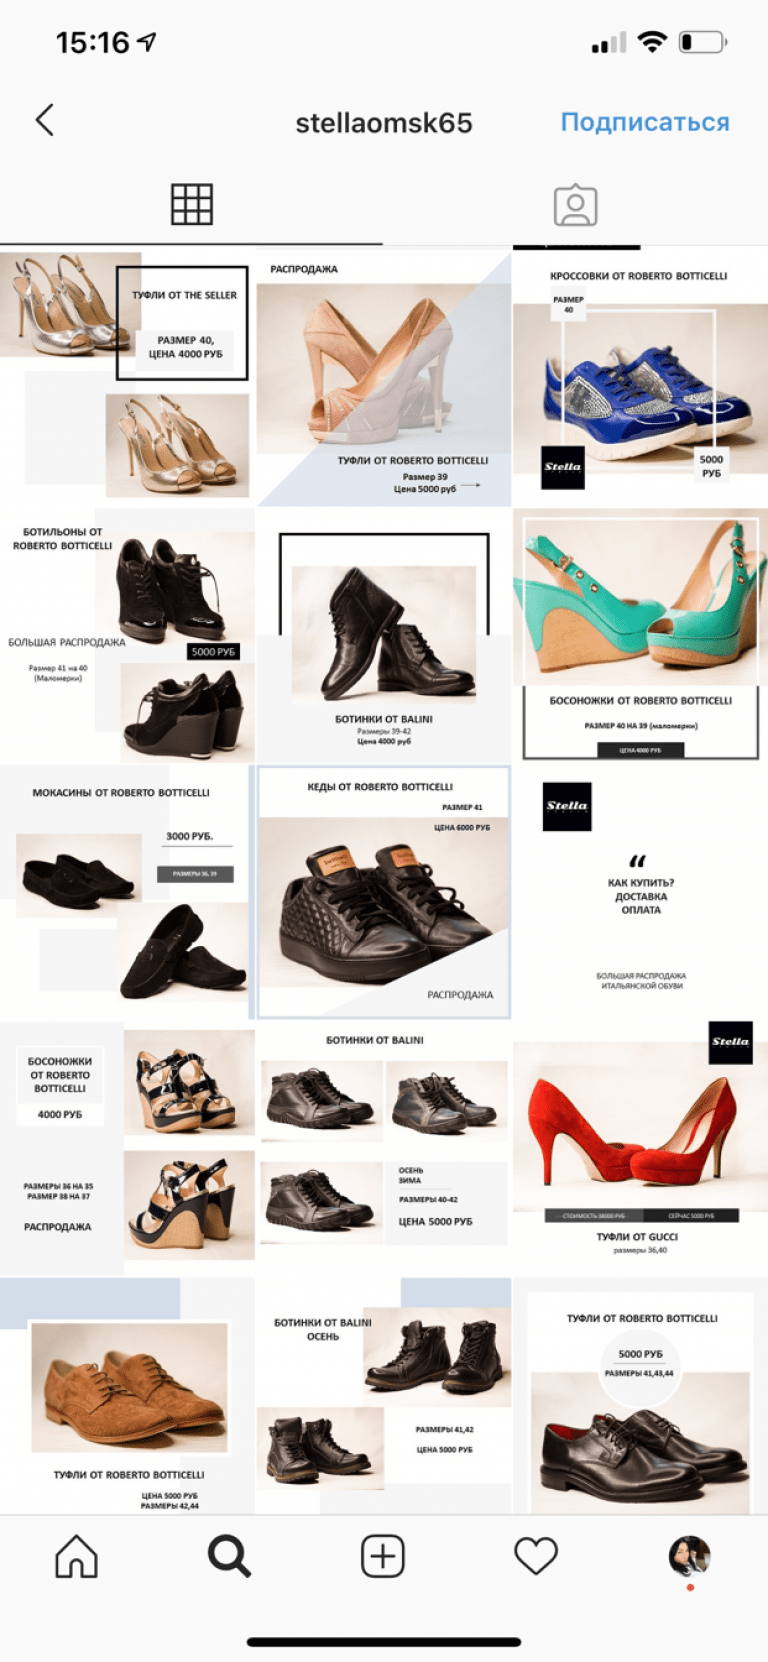 Эффективная реклама обувного магазина - примеры фото и текстов, виды